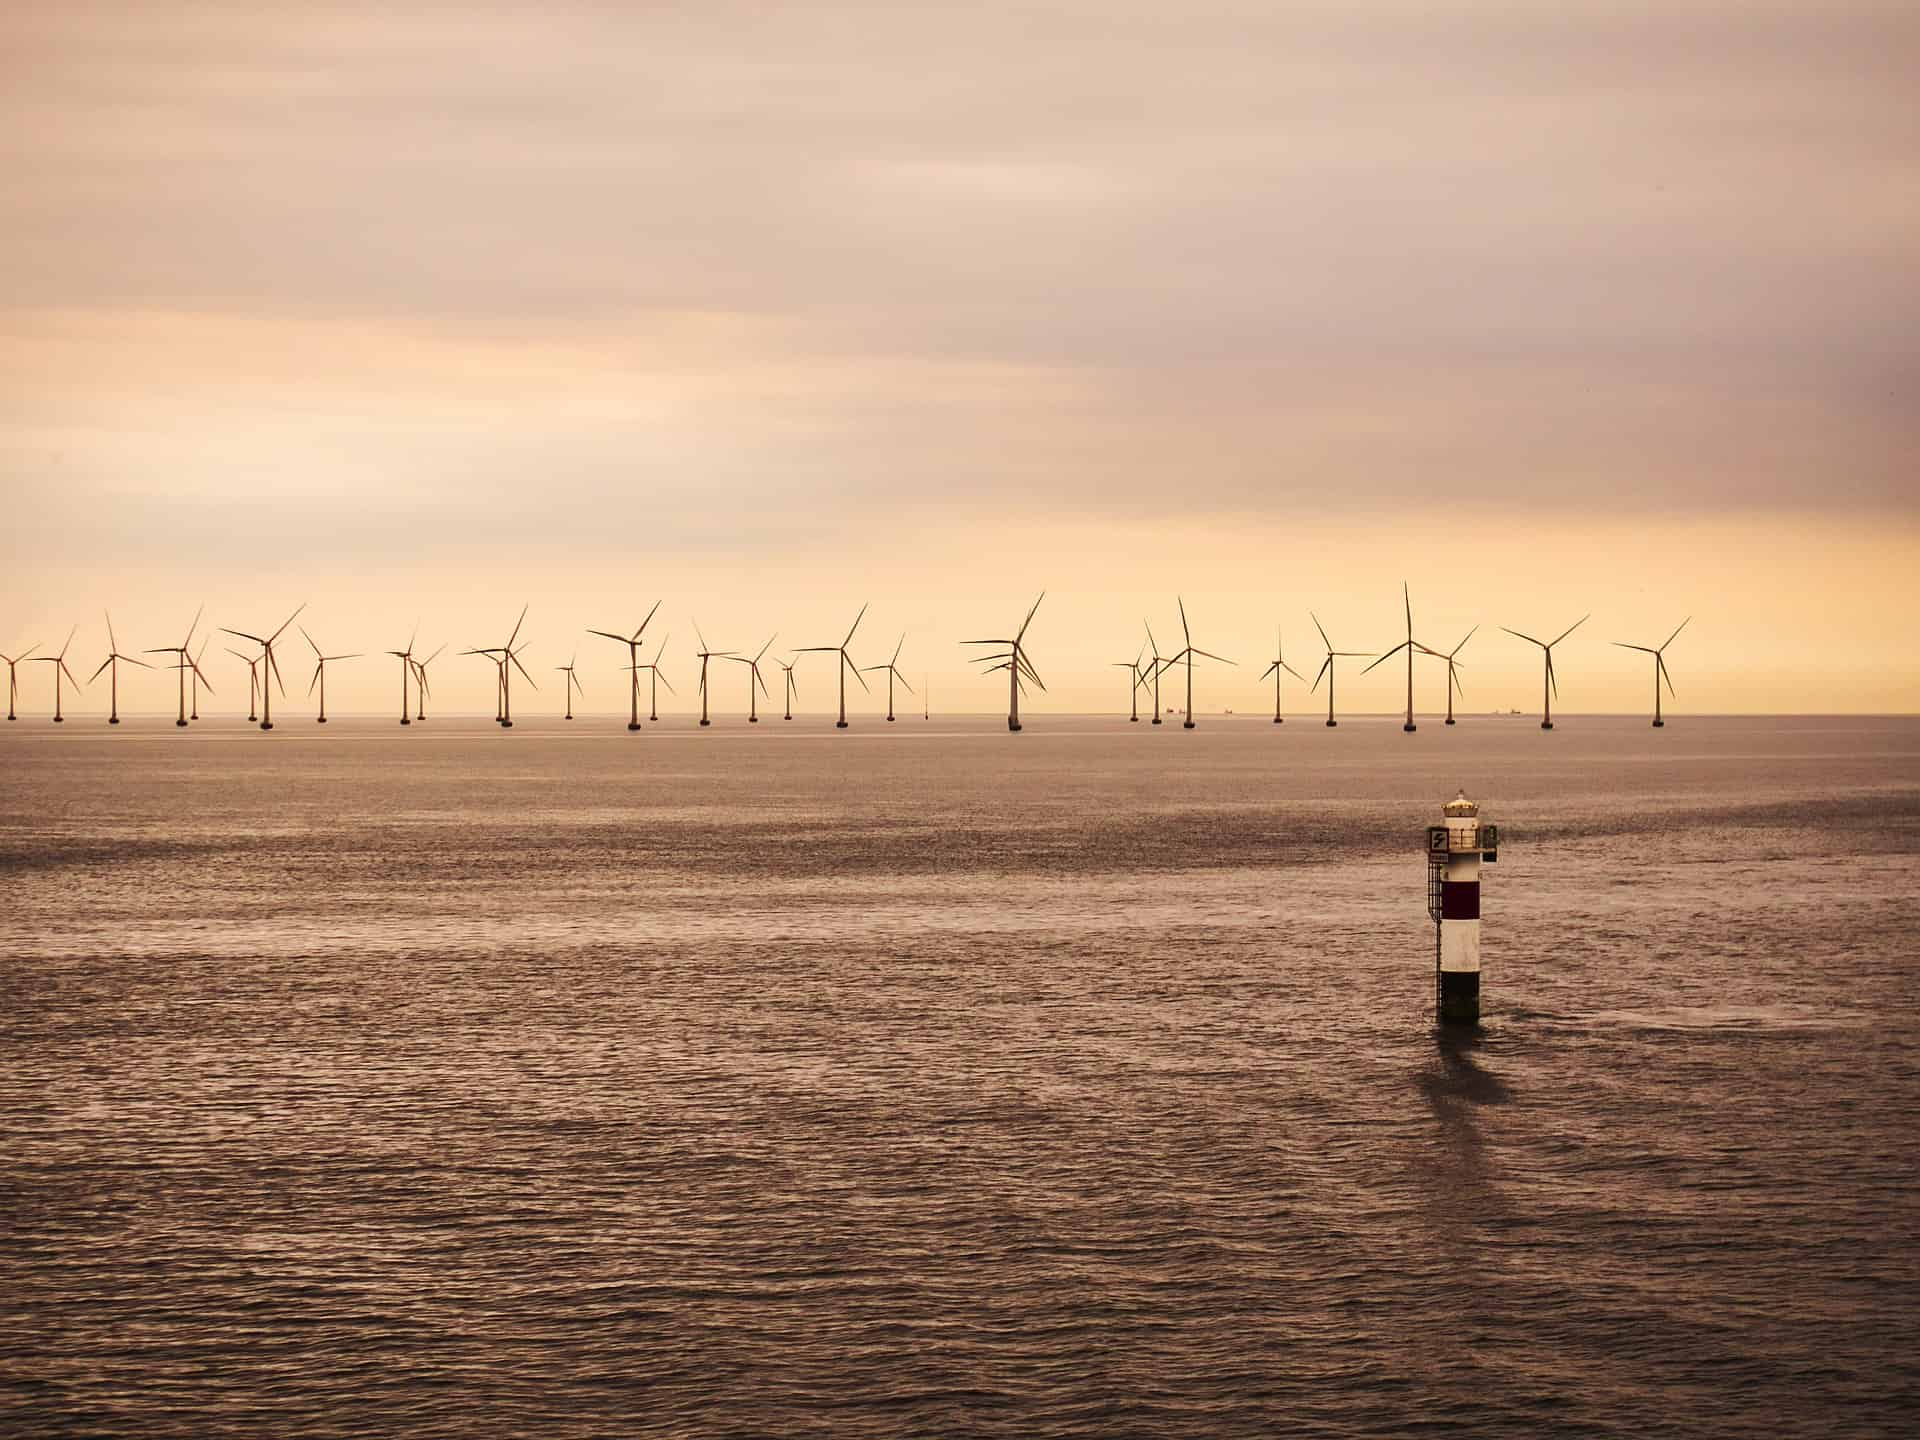 Nederland en VK breiden energie-samenwerking uit met nieuwe elektriciteitsverbinding